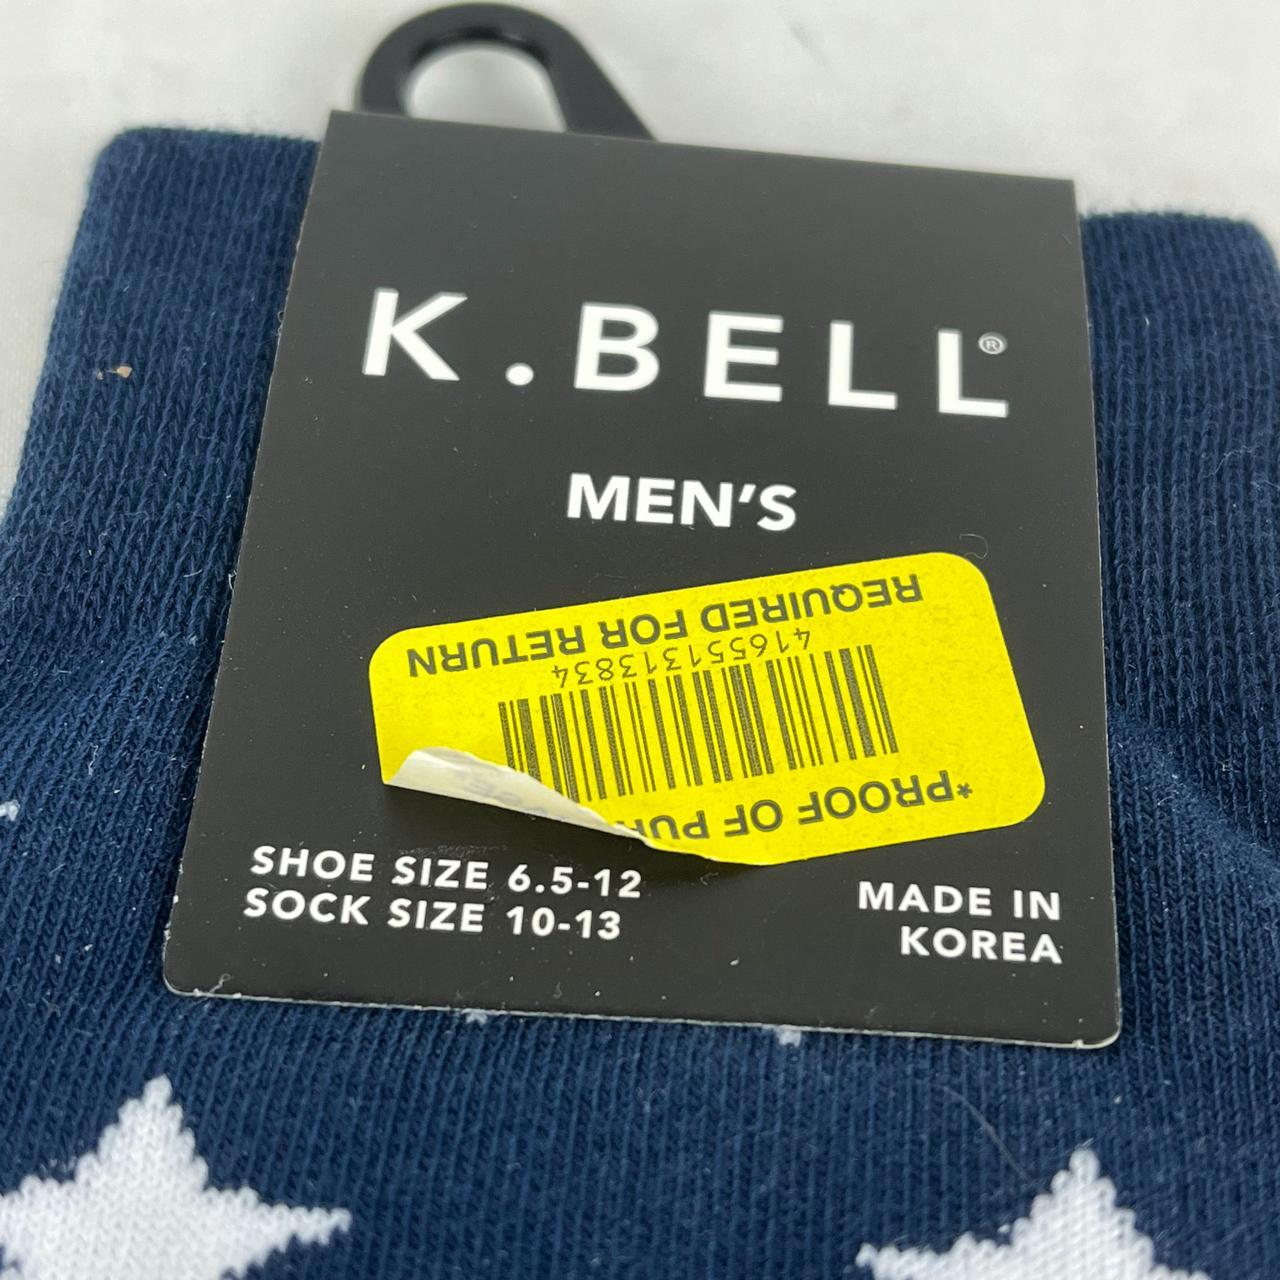 K. Bell Socks Men's Red and Blue Socks (4)